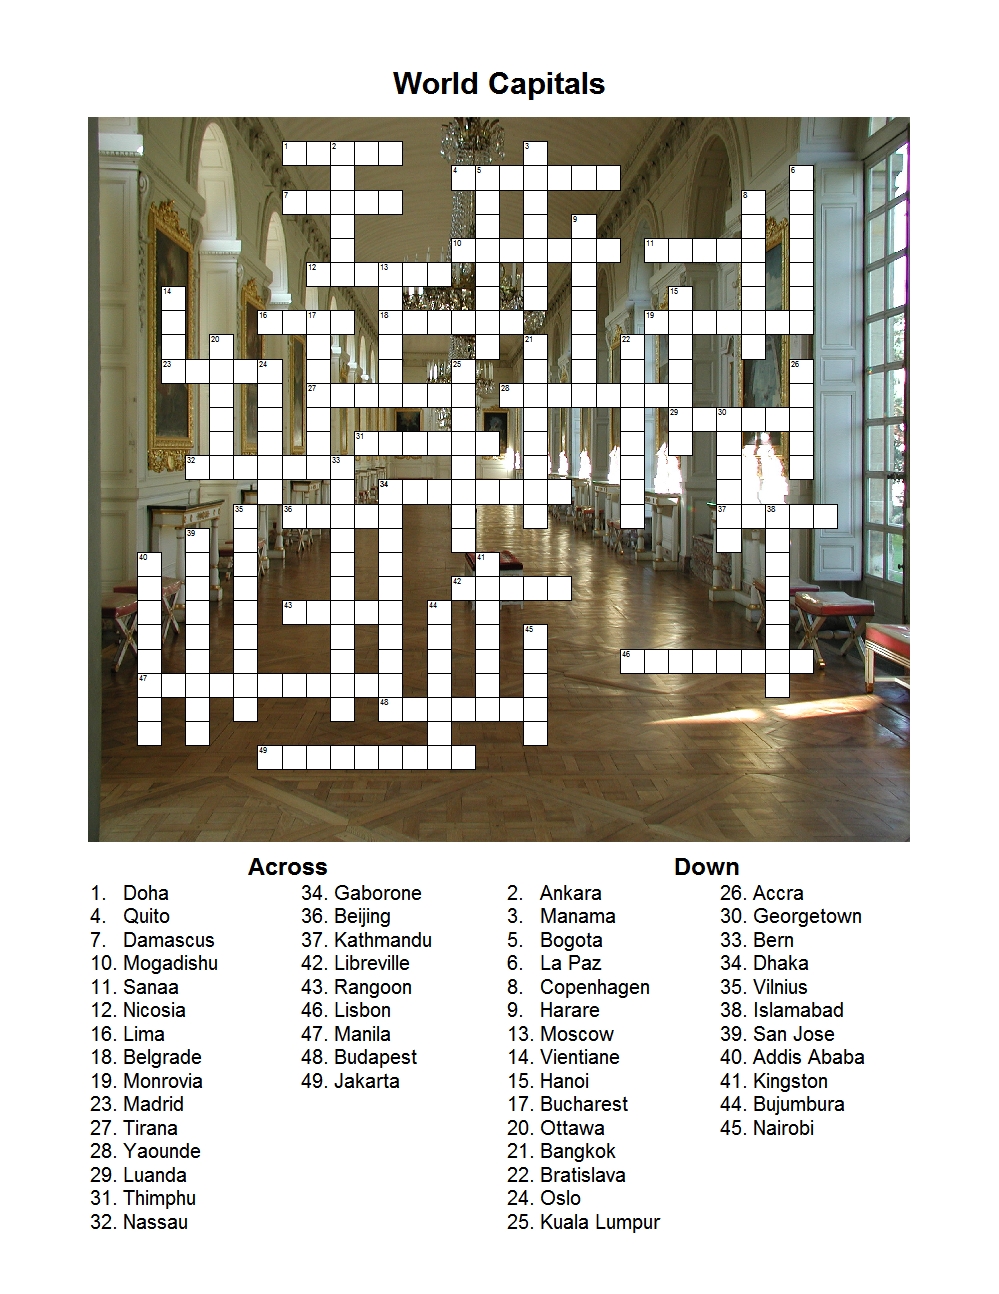 World Capitals crossword puzzle puzzle